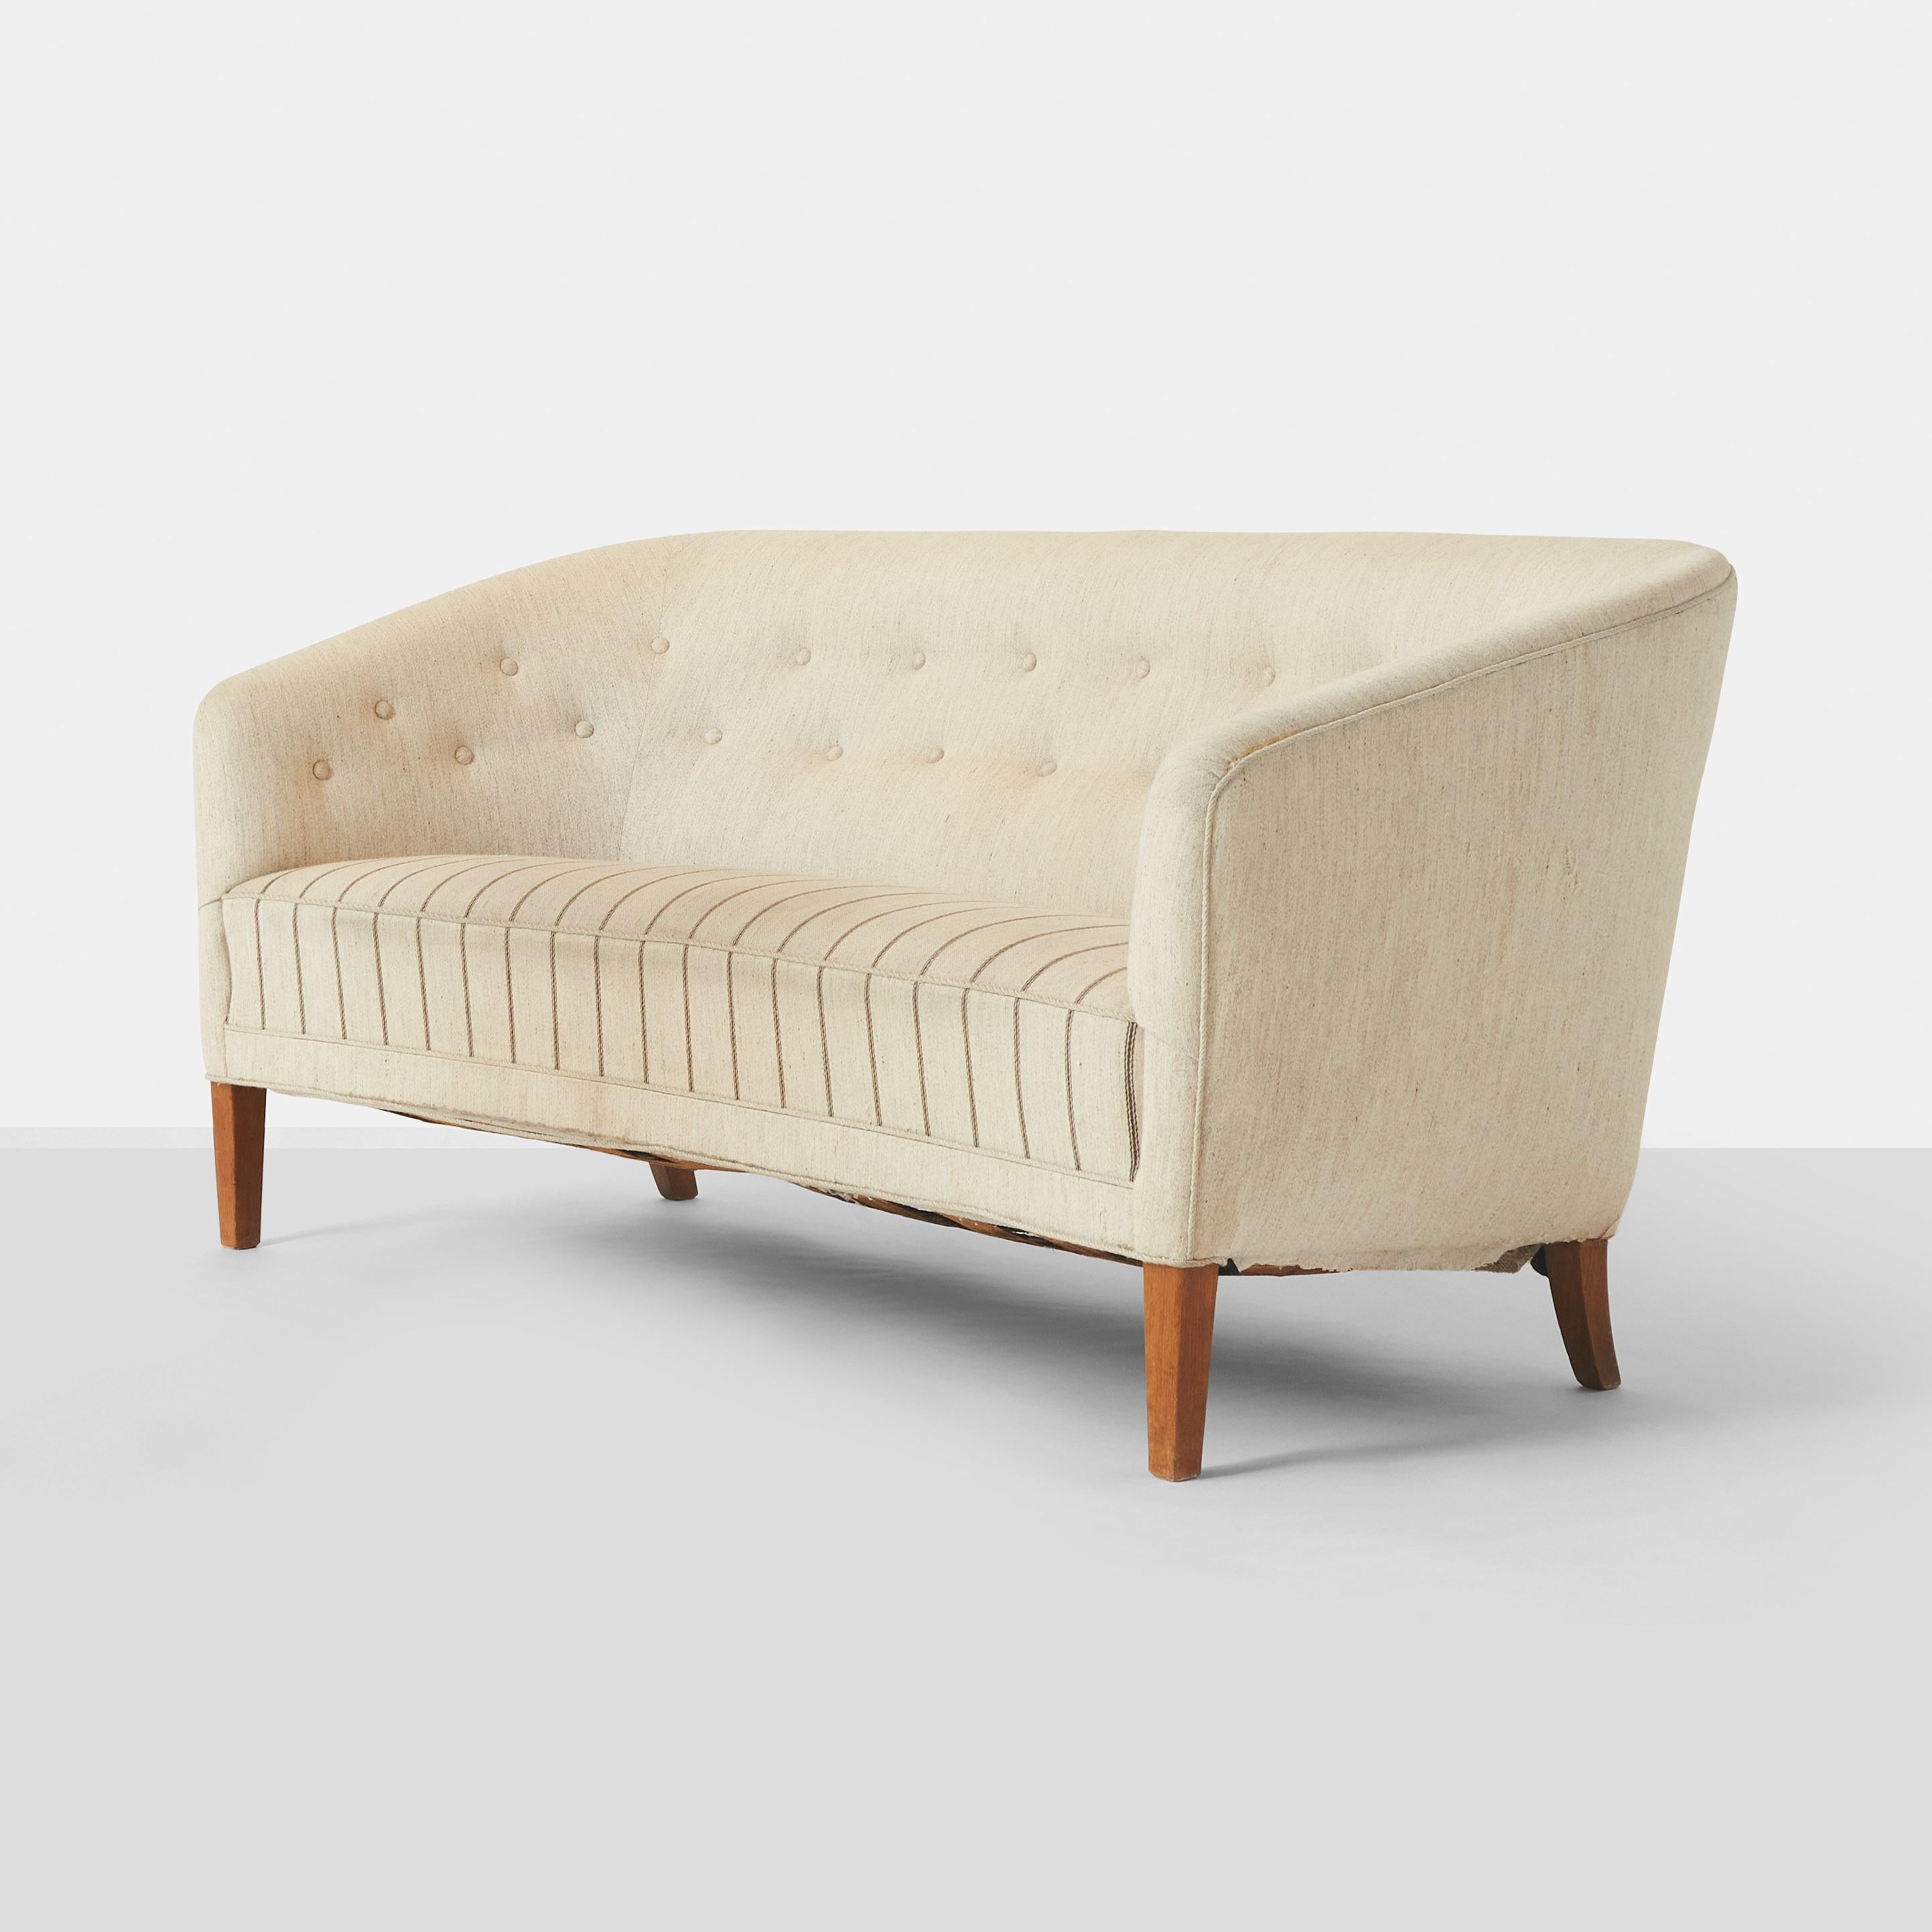 Ein elegantes Zweisitzer-Sofa des dänischen Tischlers Ludvig Pontoppidan. Das Sofa hat geschwungene Kanten und abgeschrägte Armlehnen, Beine aus Mahagoni und gepolsterte Sitzfläche, Rückenlehne und Seiten. 